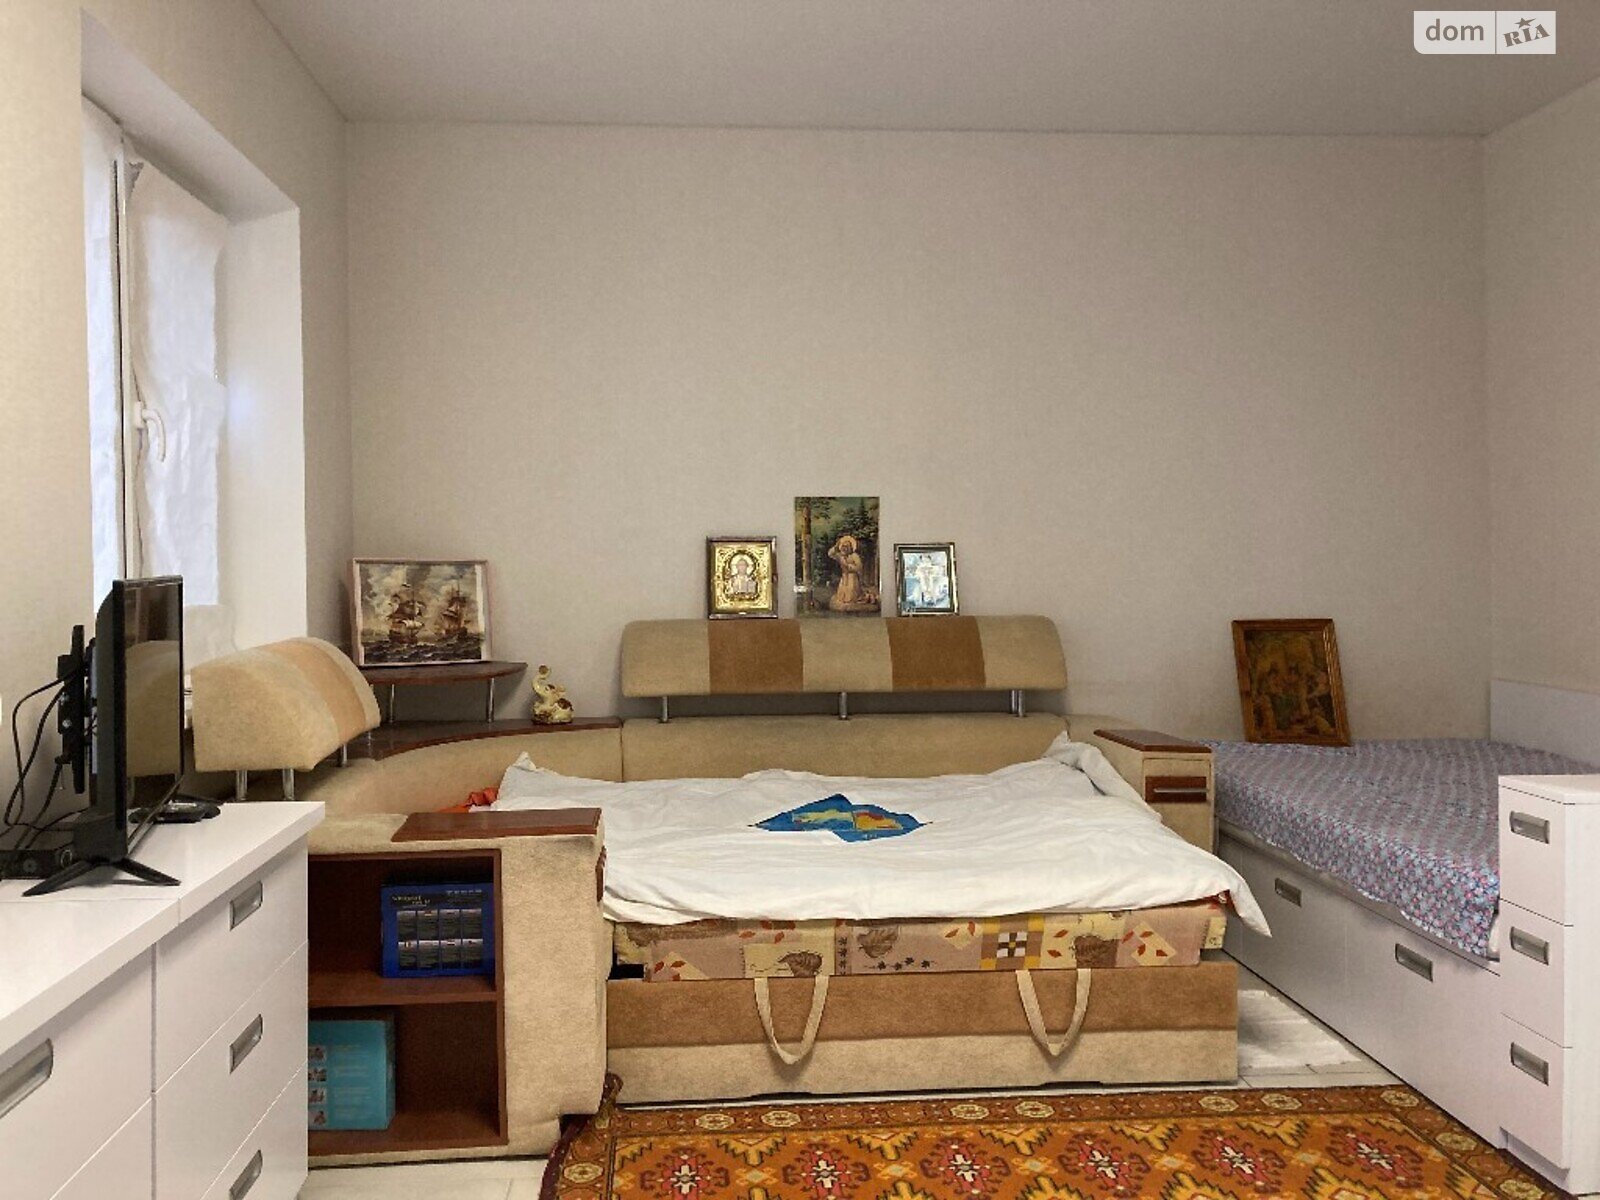 Продажа однокомнатной квартиры в Одессе, на ул. Люстдорфская дорога 114Е, кв. 20, район Киевский фото 1